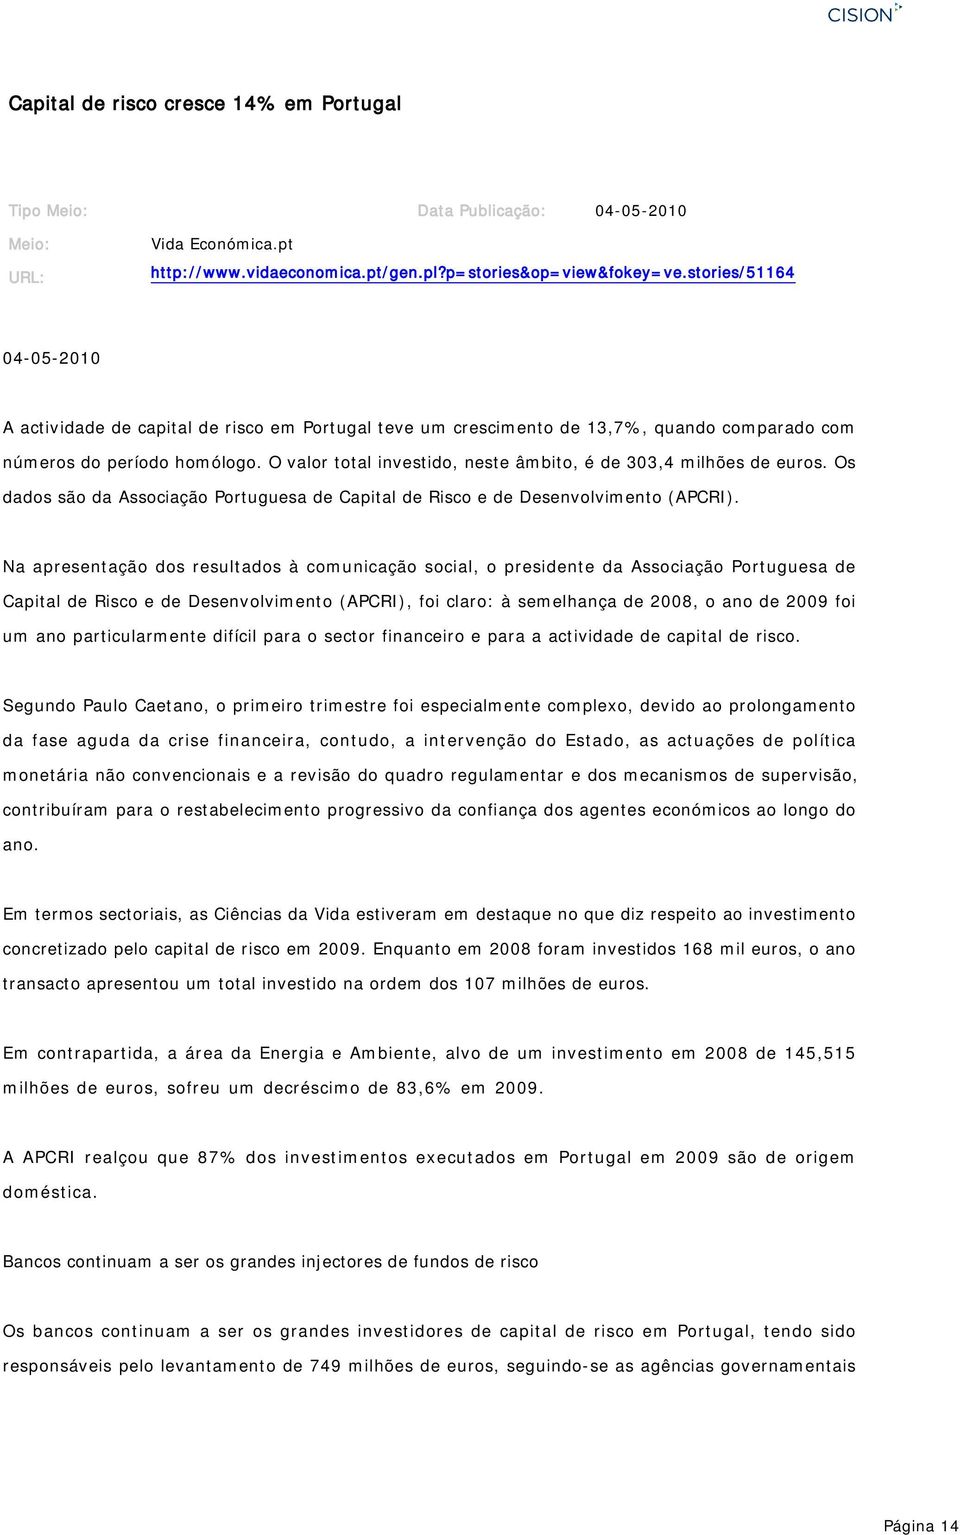 O valor total investido, neste âmbito, é de 303,4 milhões de euros. Os dados são da Associação Portuguesa de Capital de Risco e de Desenvolvimento (APCRI).